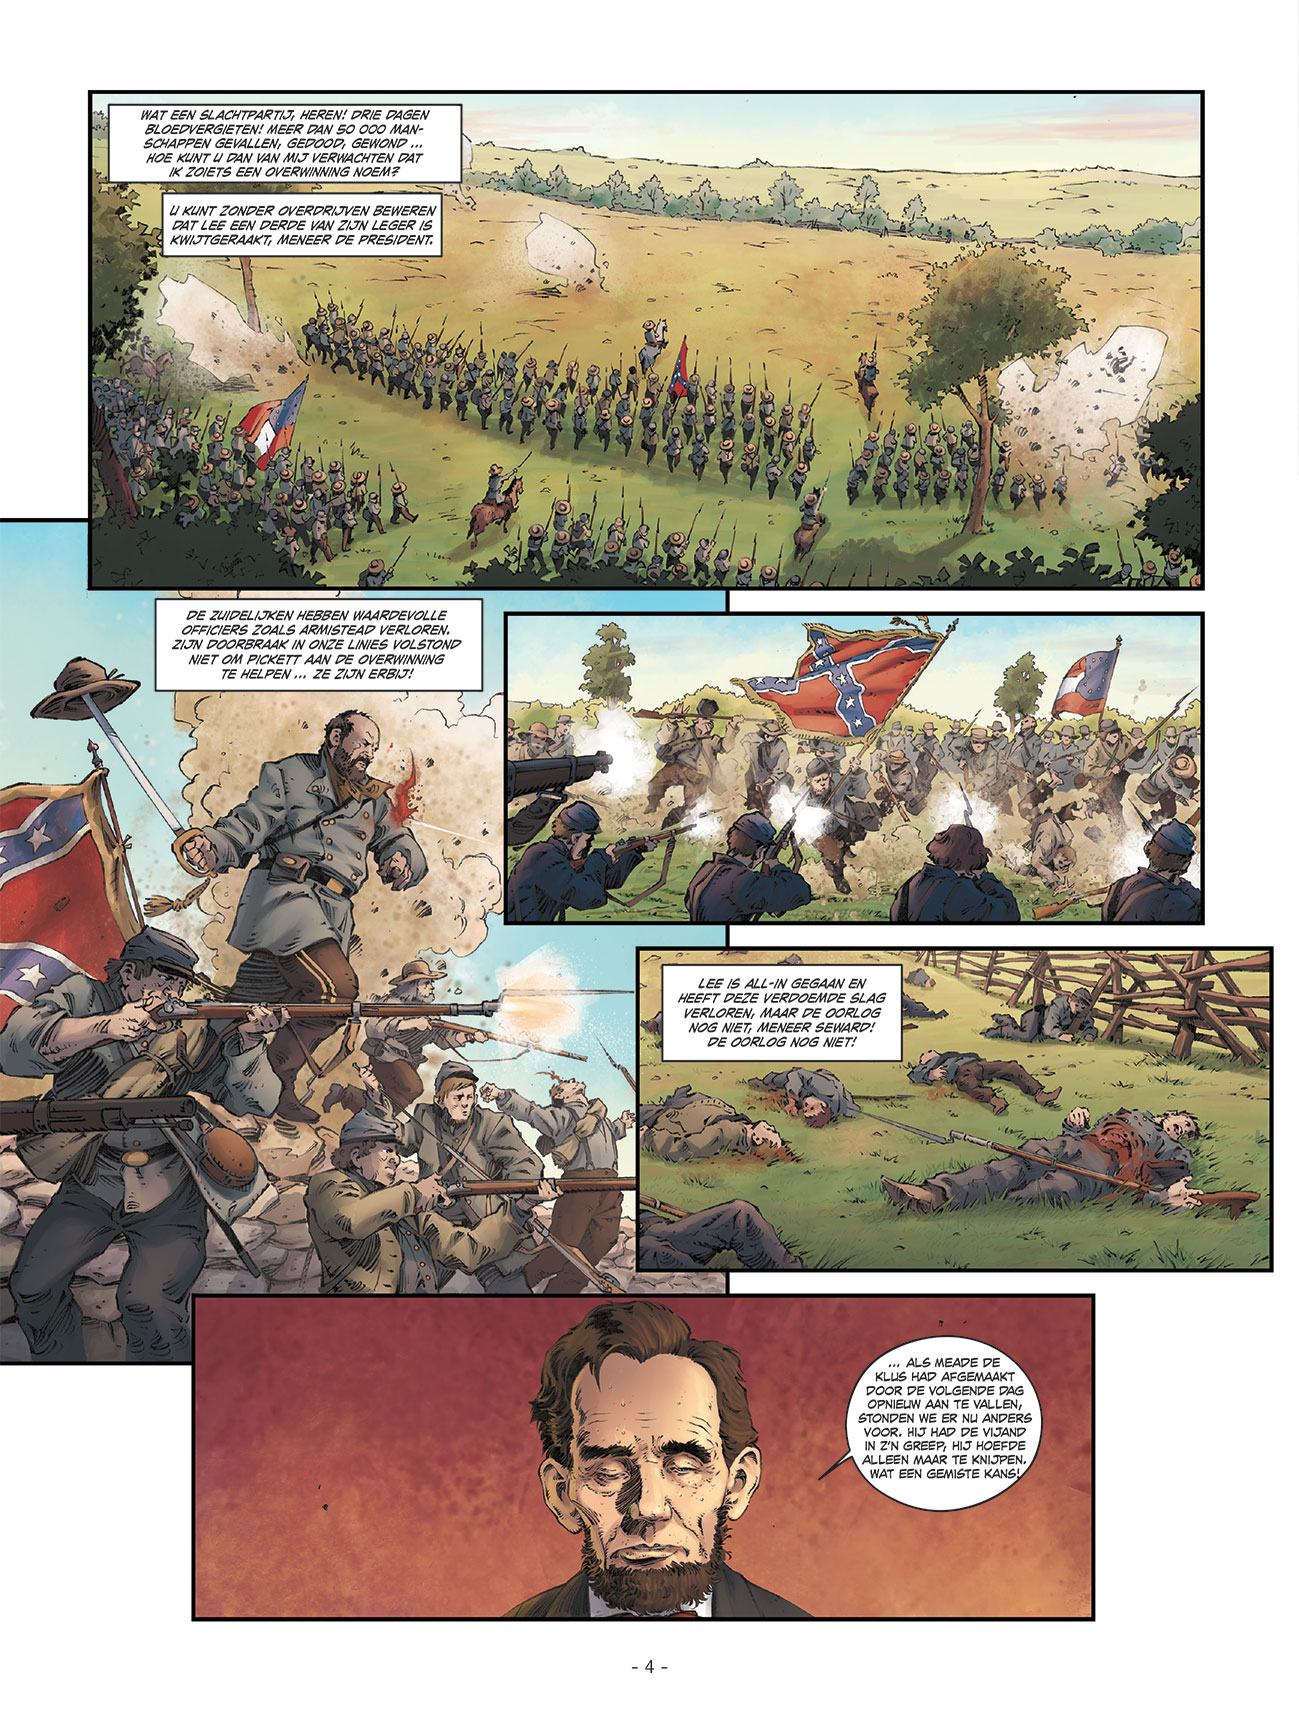 Lincoln pagina 2